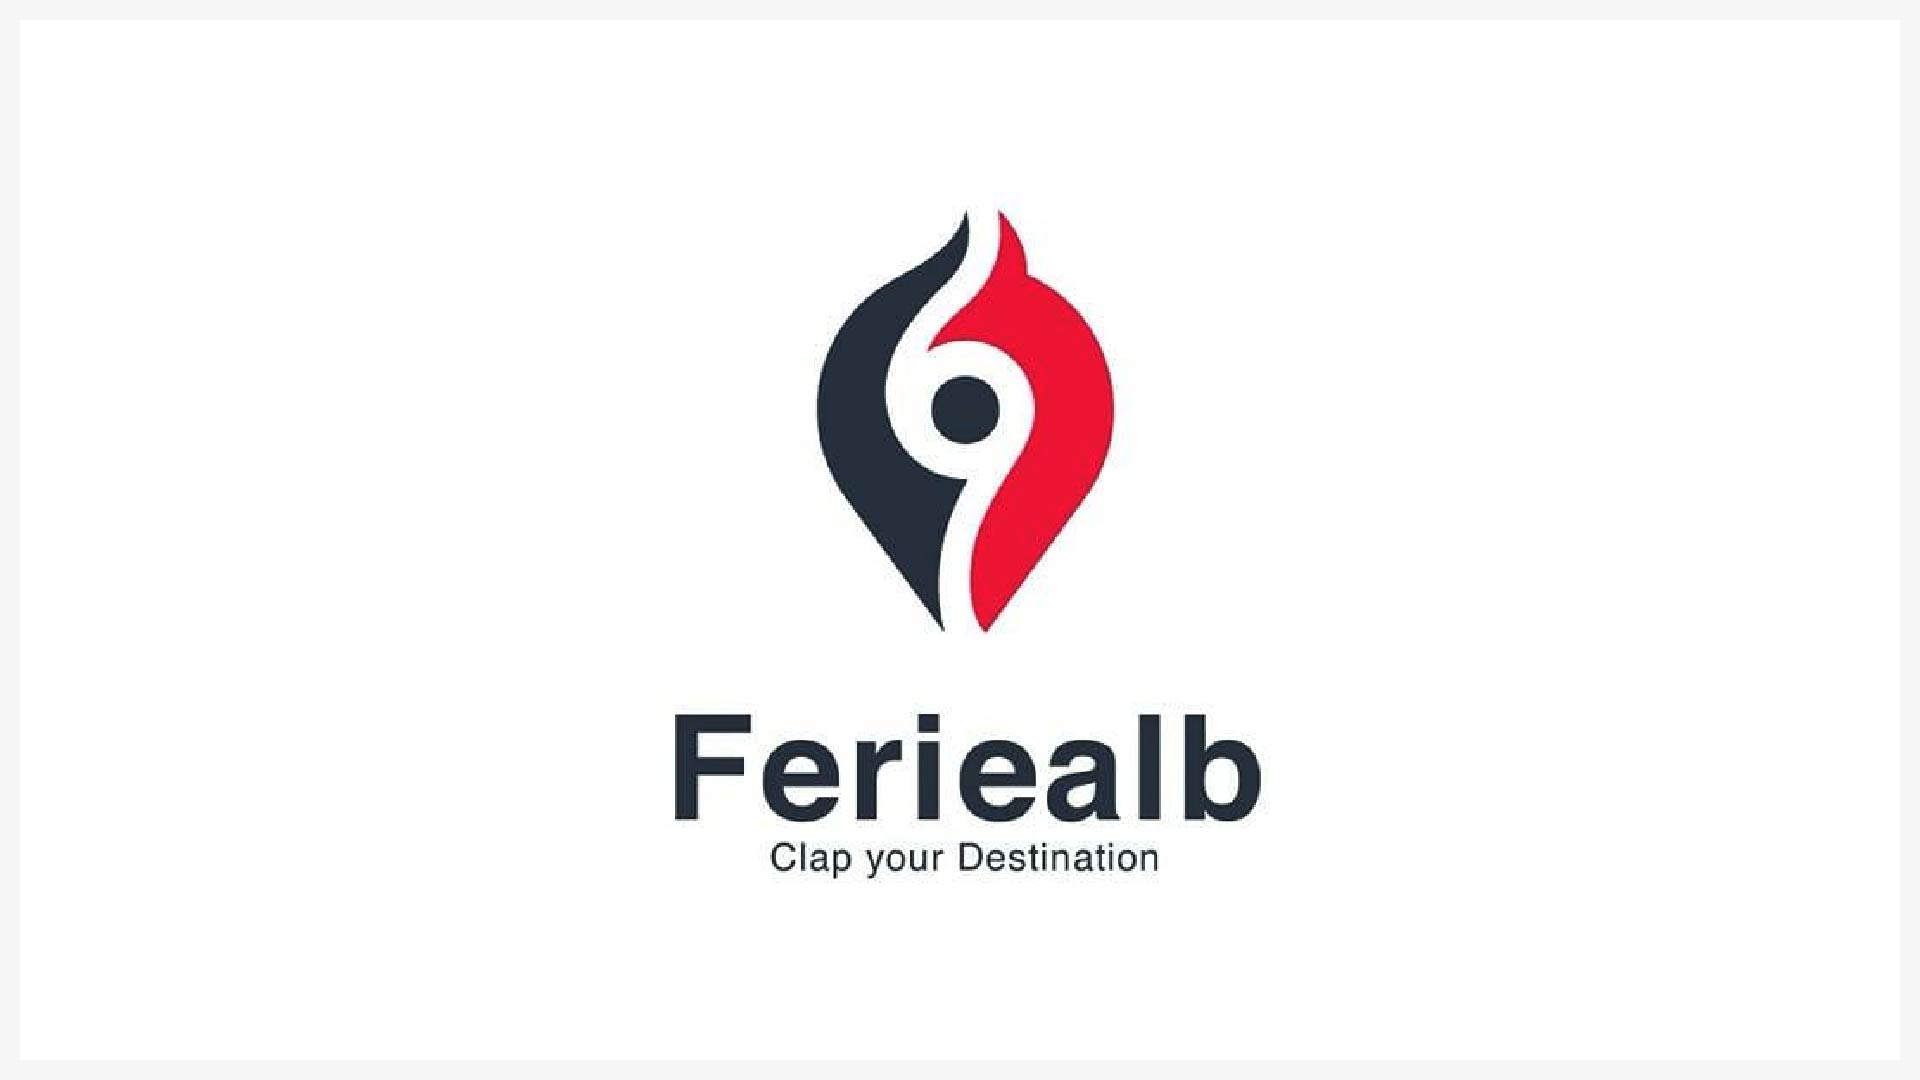 Feriealb logo